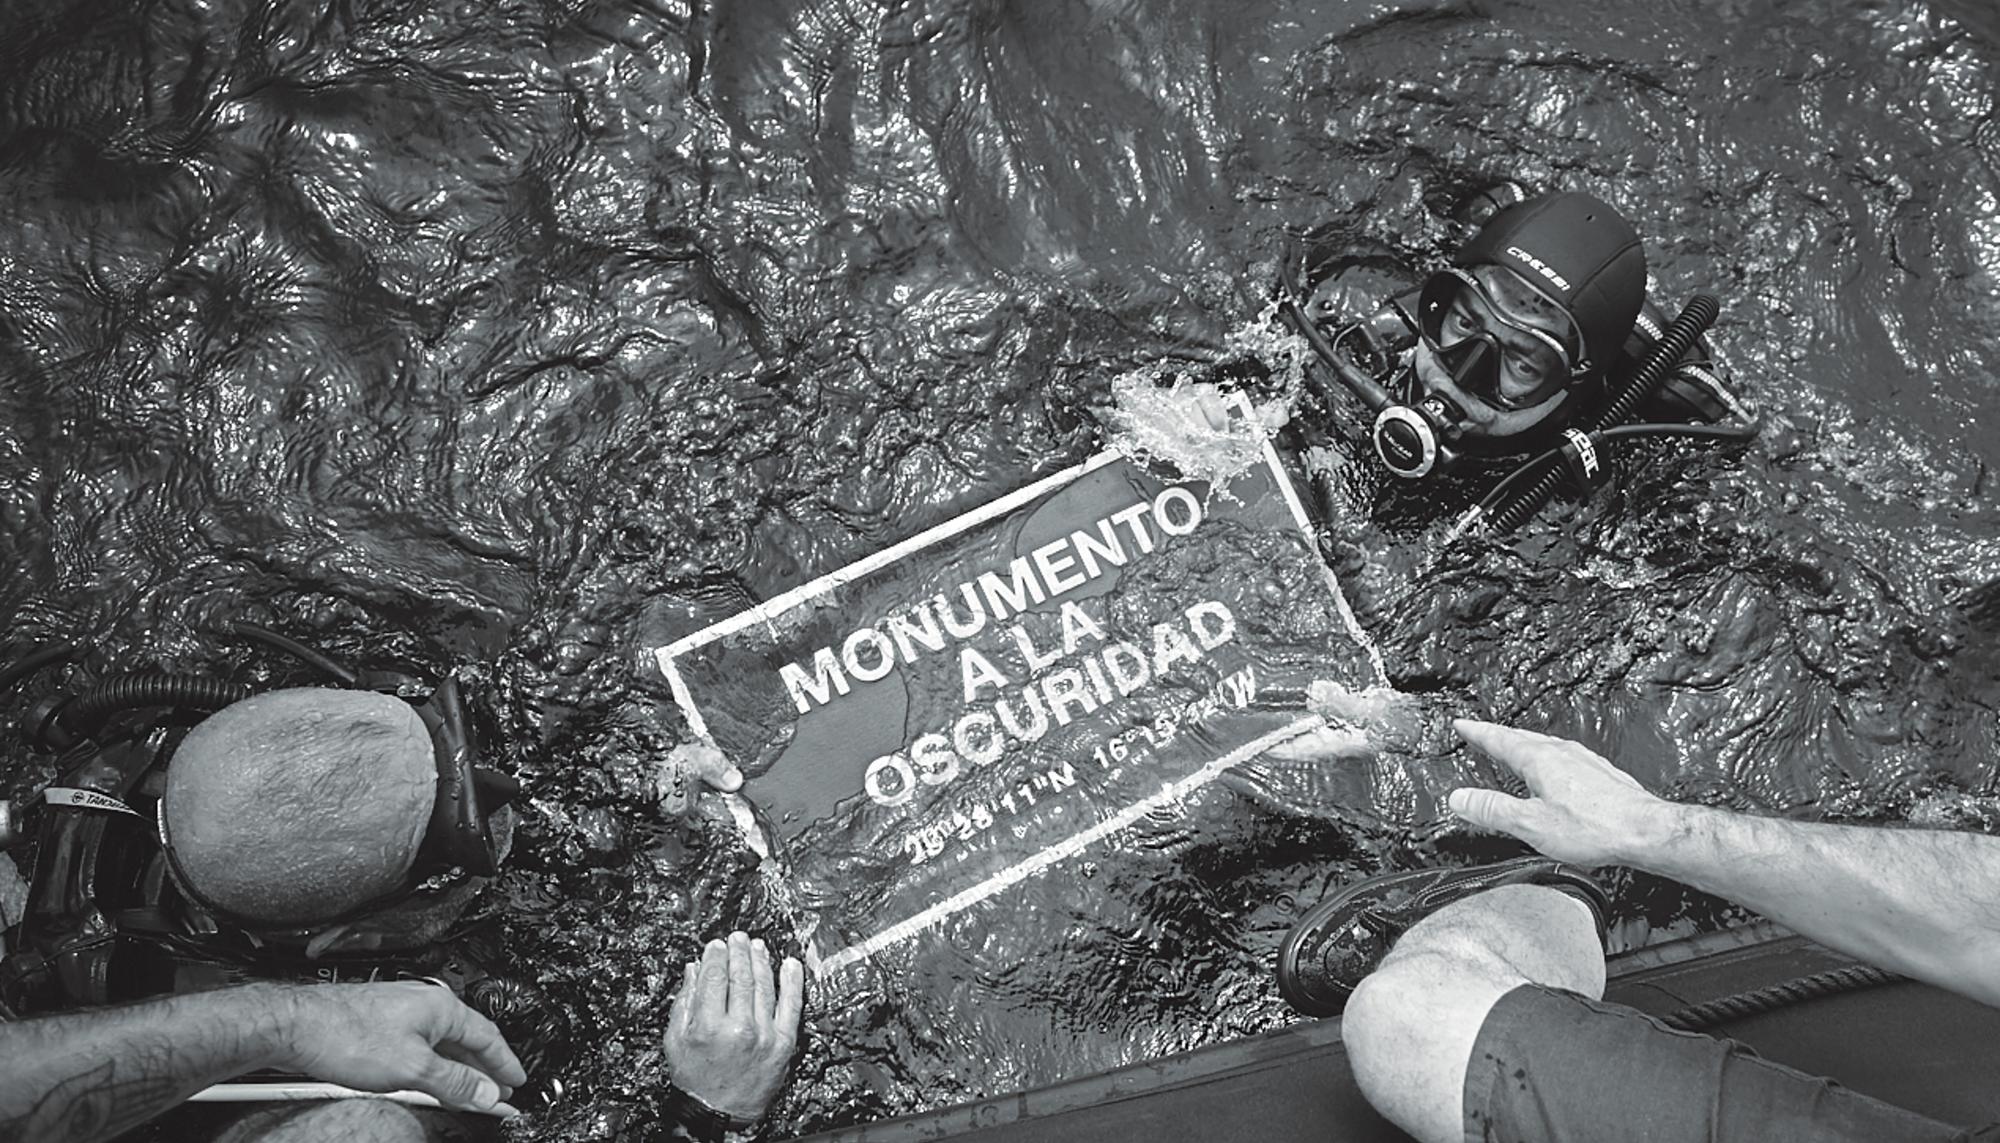 Acción de los artistas Miguel G. Morales y Eugenio Merino en memoria de las víctimas de la represión franquista en Canarias